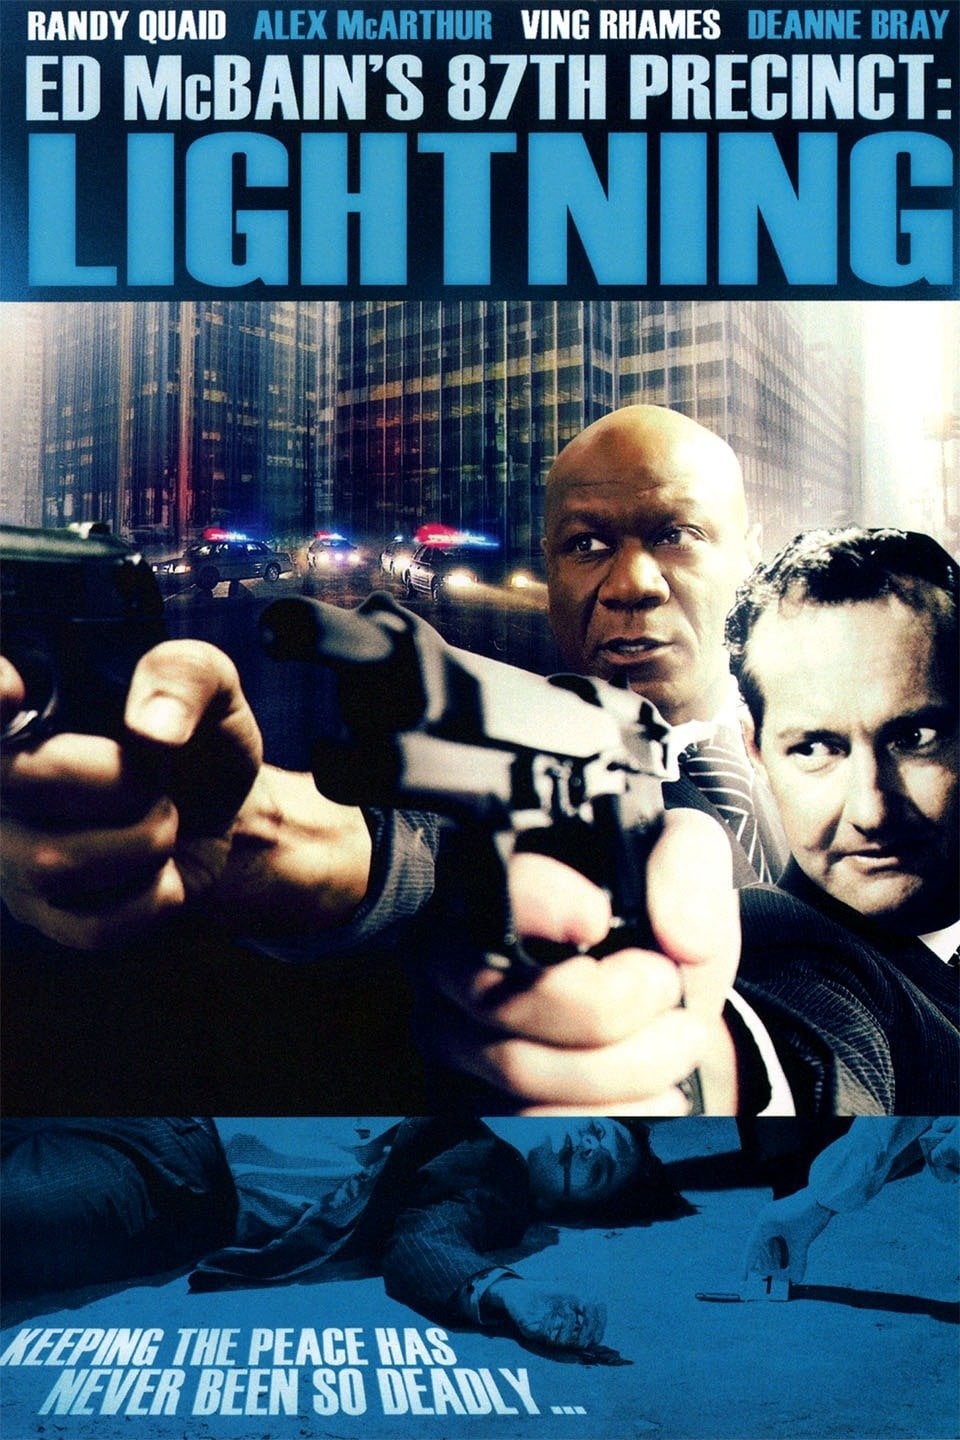 Ed McBain's 87th Precinct: Lightning (1995)